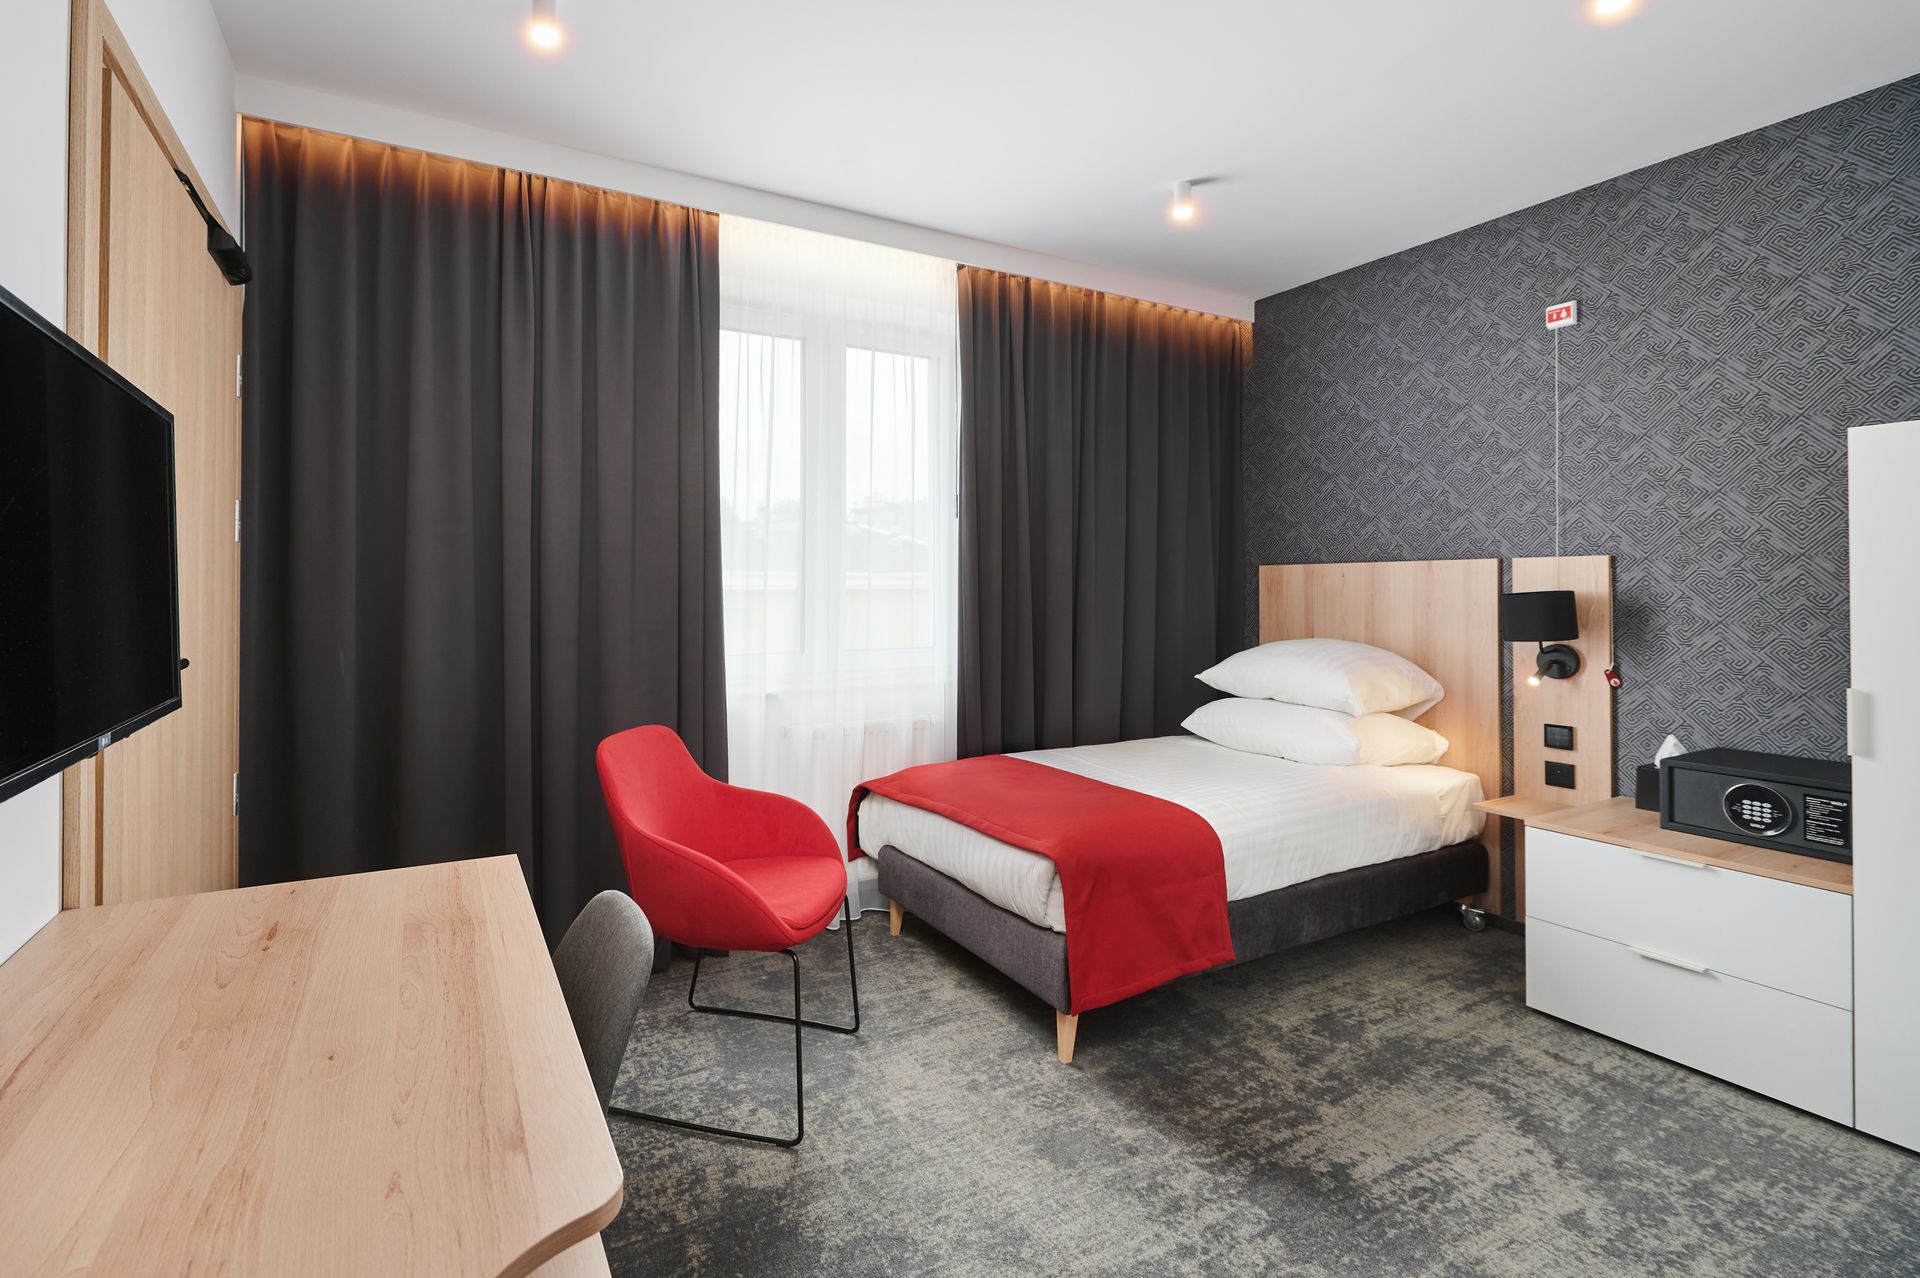 Rzeszowski hotel Hetman przeszedł pełną modernizację. Będzie funkcjonował pod nową marką 